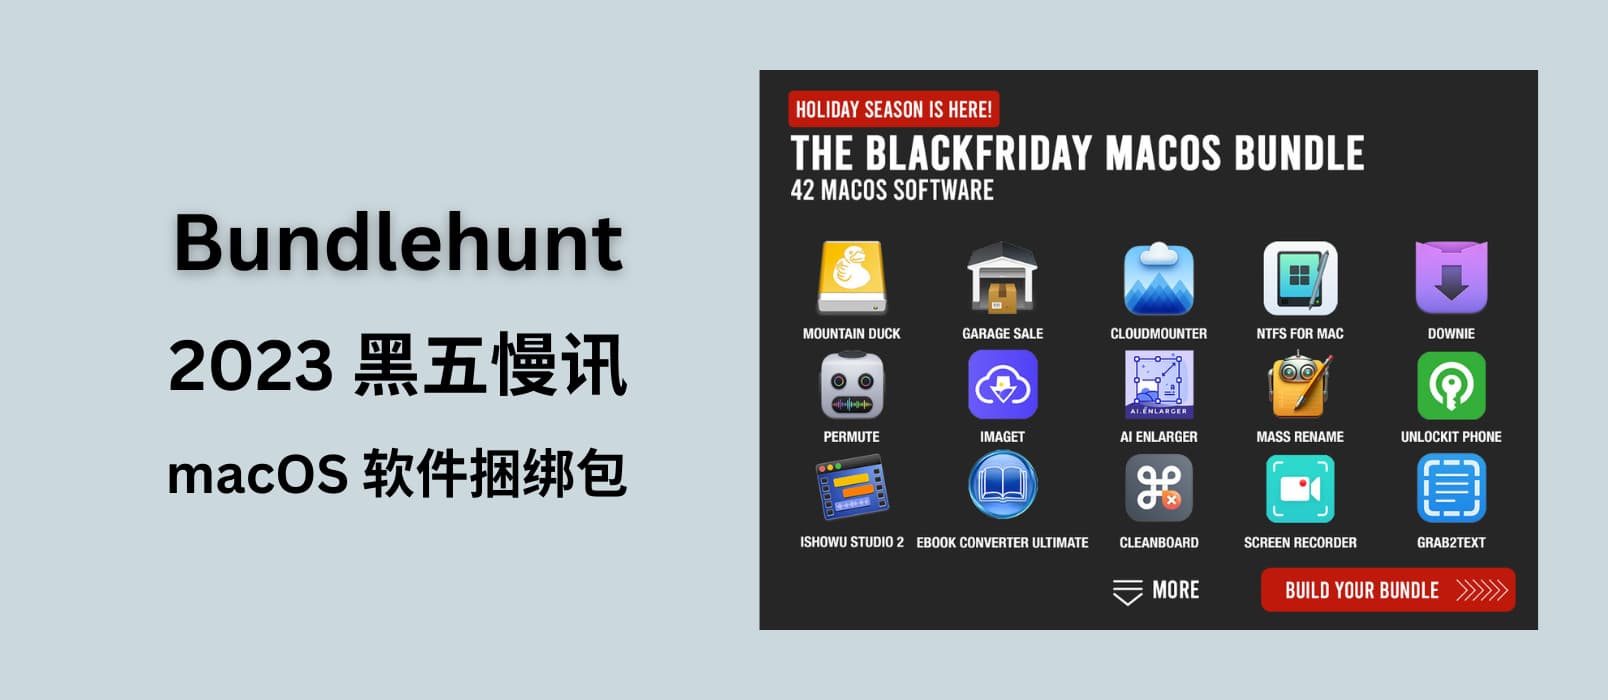 Bundlehunt 2023年 macOS 软件黑五捆绑包【慢讯】